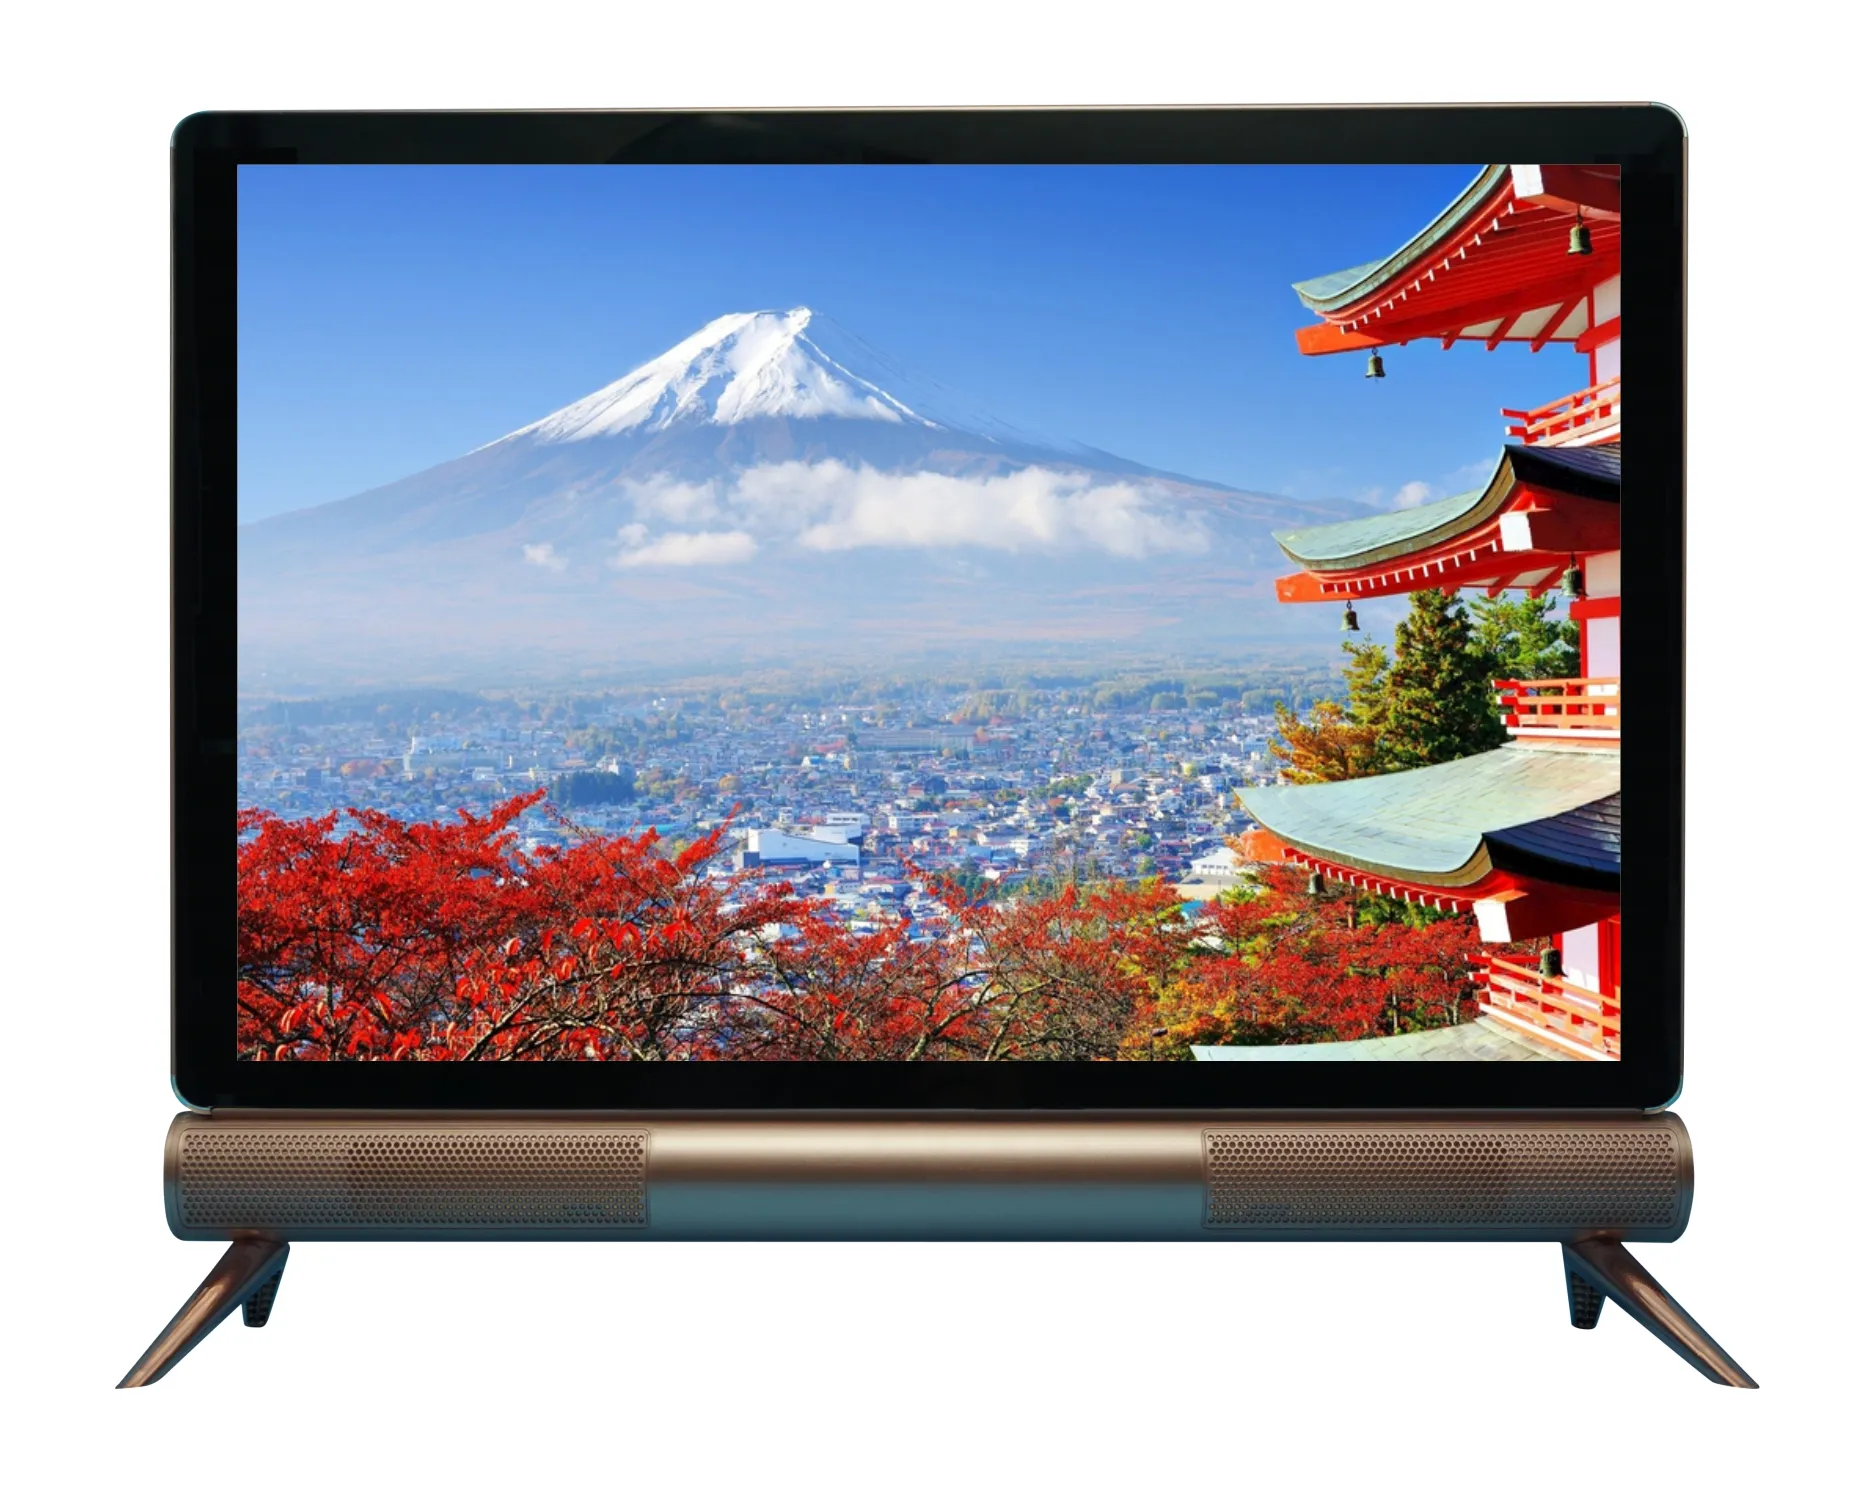 الأفضل مبيعاً شاشة تلفاز LCD LED صغيرة 22 بوصة عالية الجودة HDTV بتواصلات متعددة تصميم خزانة سوداء رائجة